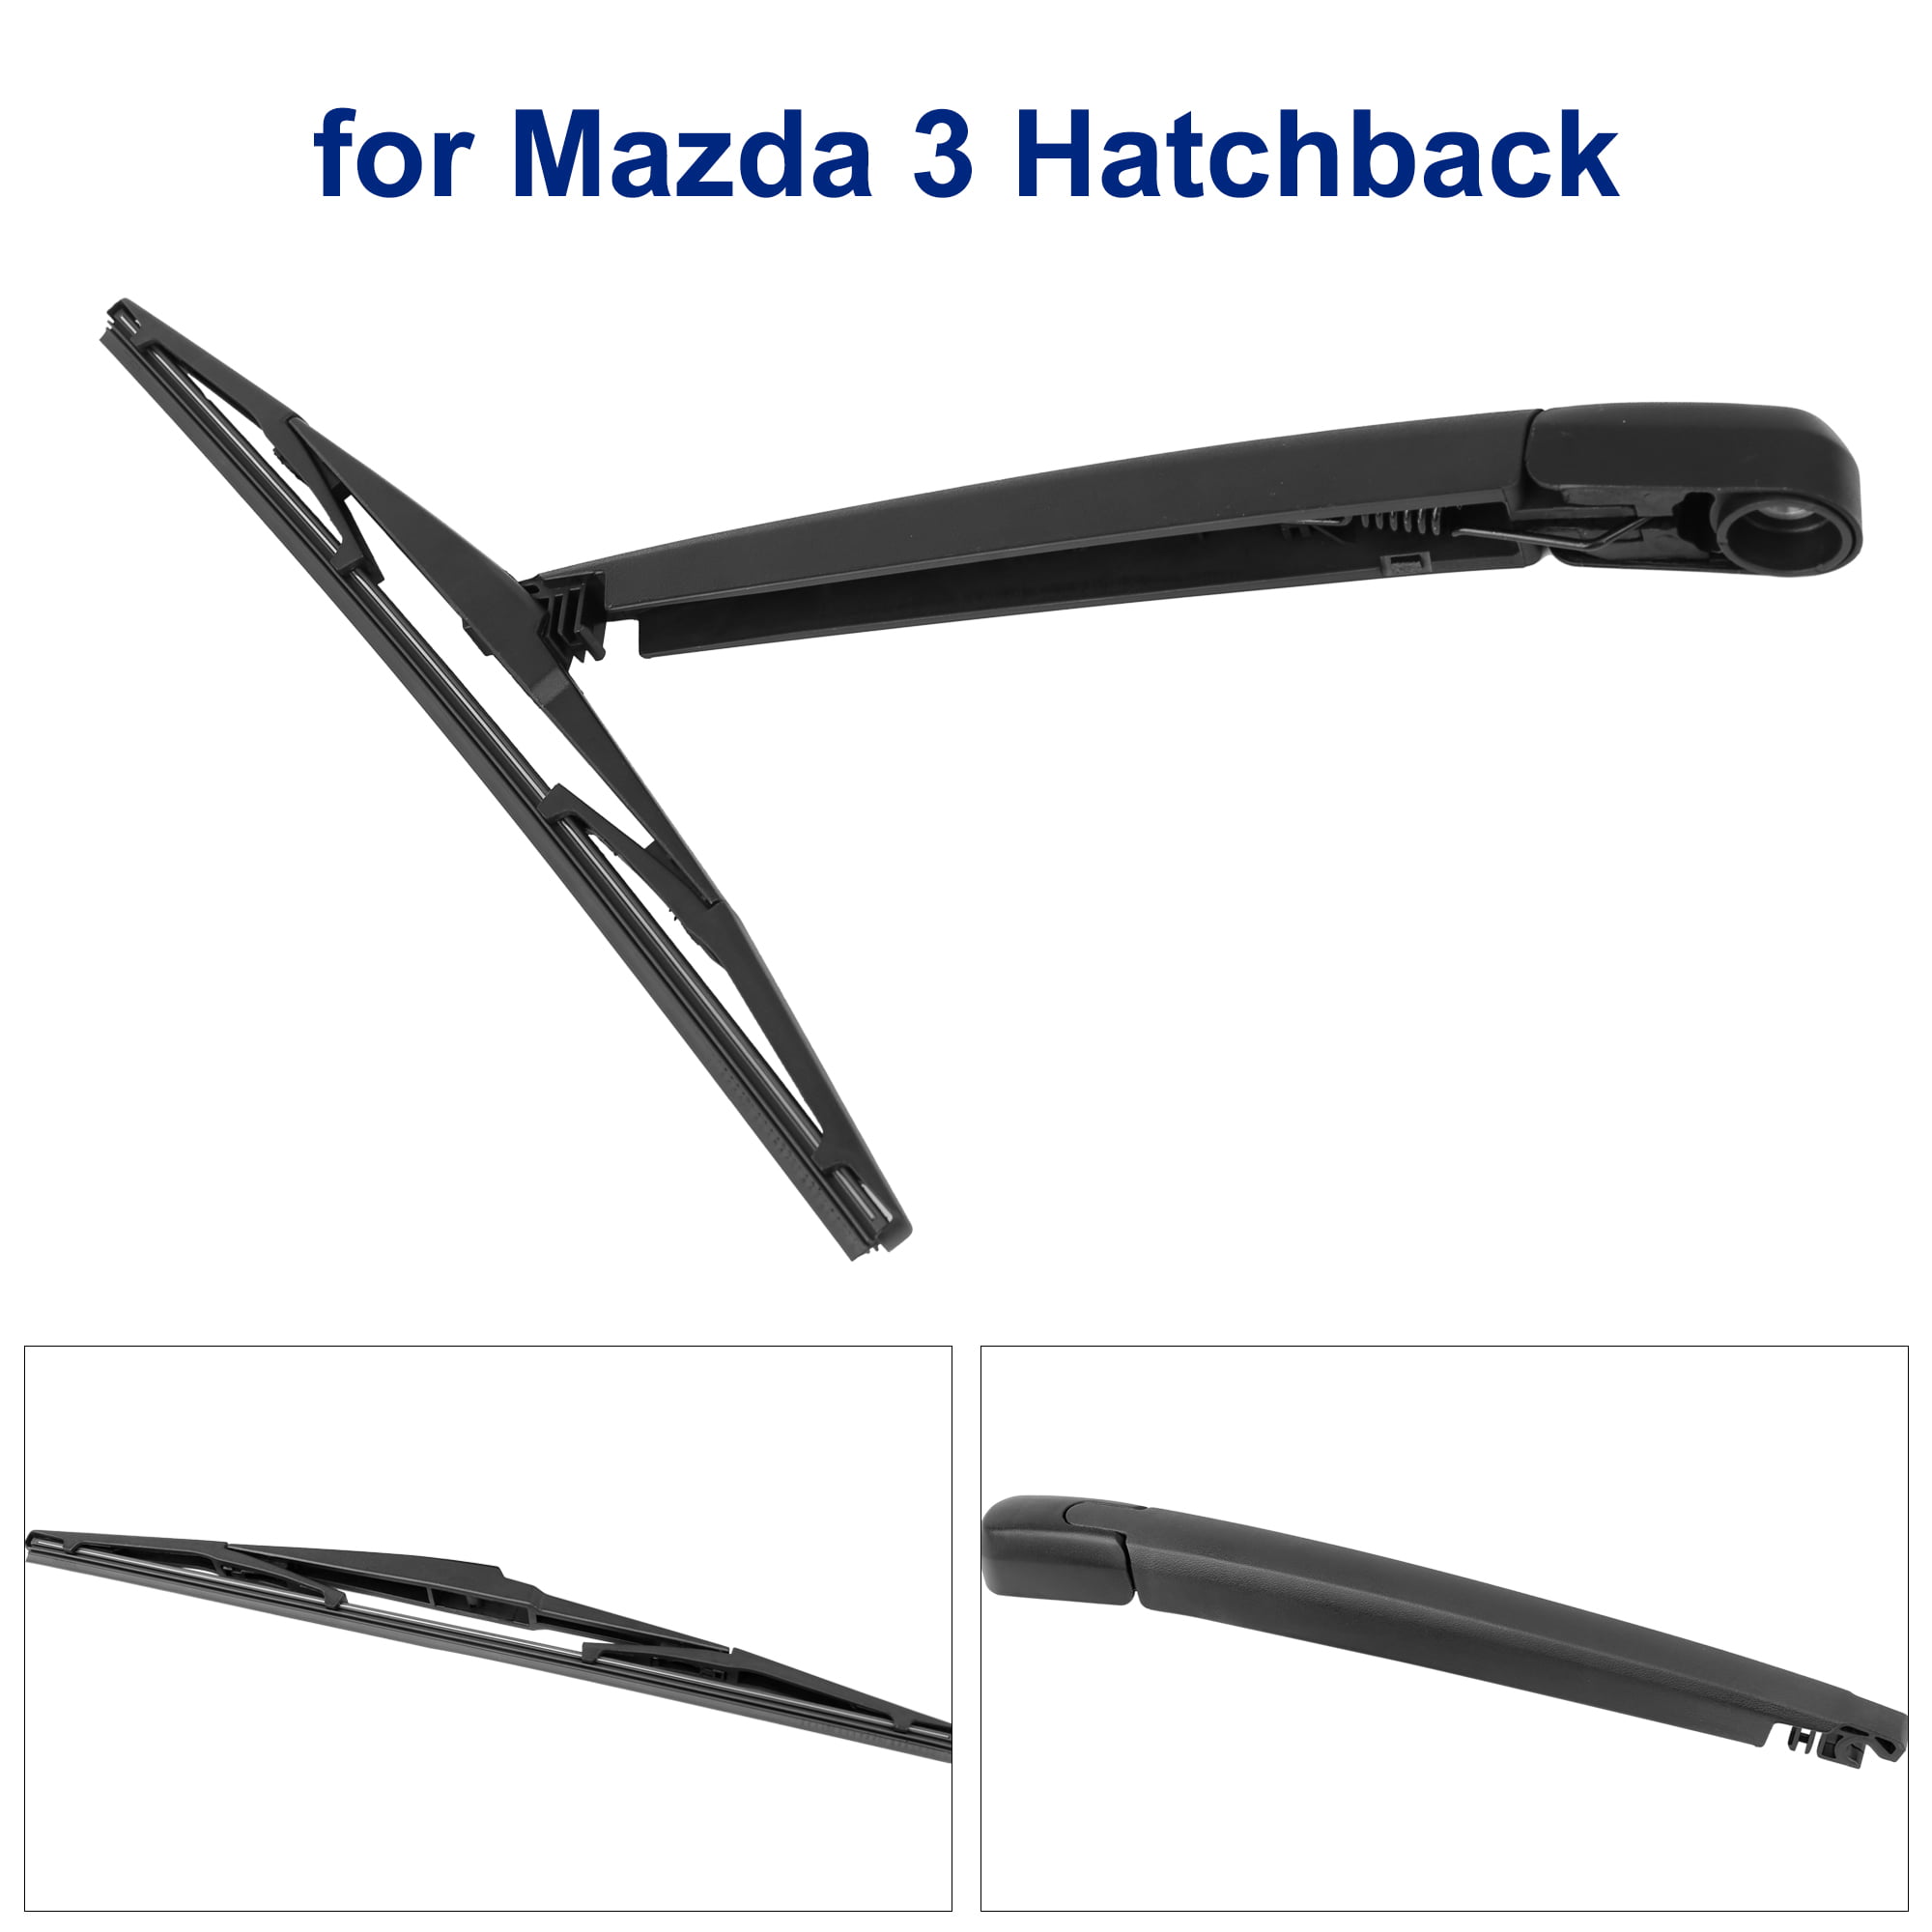 2012 Mazda 3 Hatchback Wiper Blade Size - Ultimate Mazda 2018 Mazda 3 Hatchback Wiper Blade Size